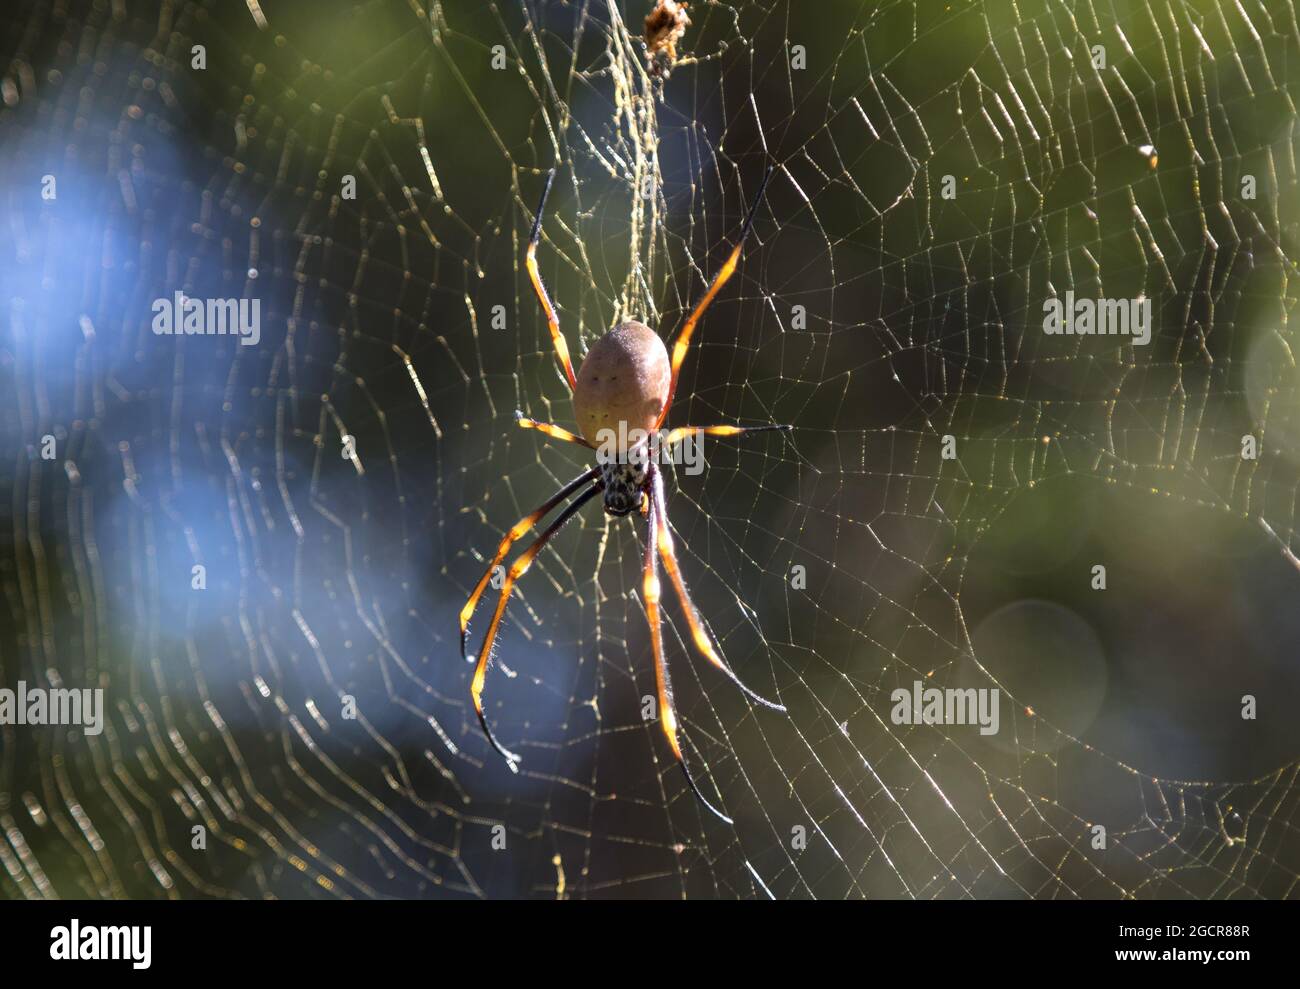 Nahaufnahme mit einer Spinne. Australische, ungiftige Spinne, die im Netz kriecht und darauf wartet, dass die Opfer in ihrer Falle fliegen. Makrofoto einer bunten Spinne im Fo Stockfoto